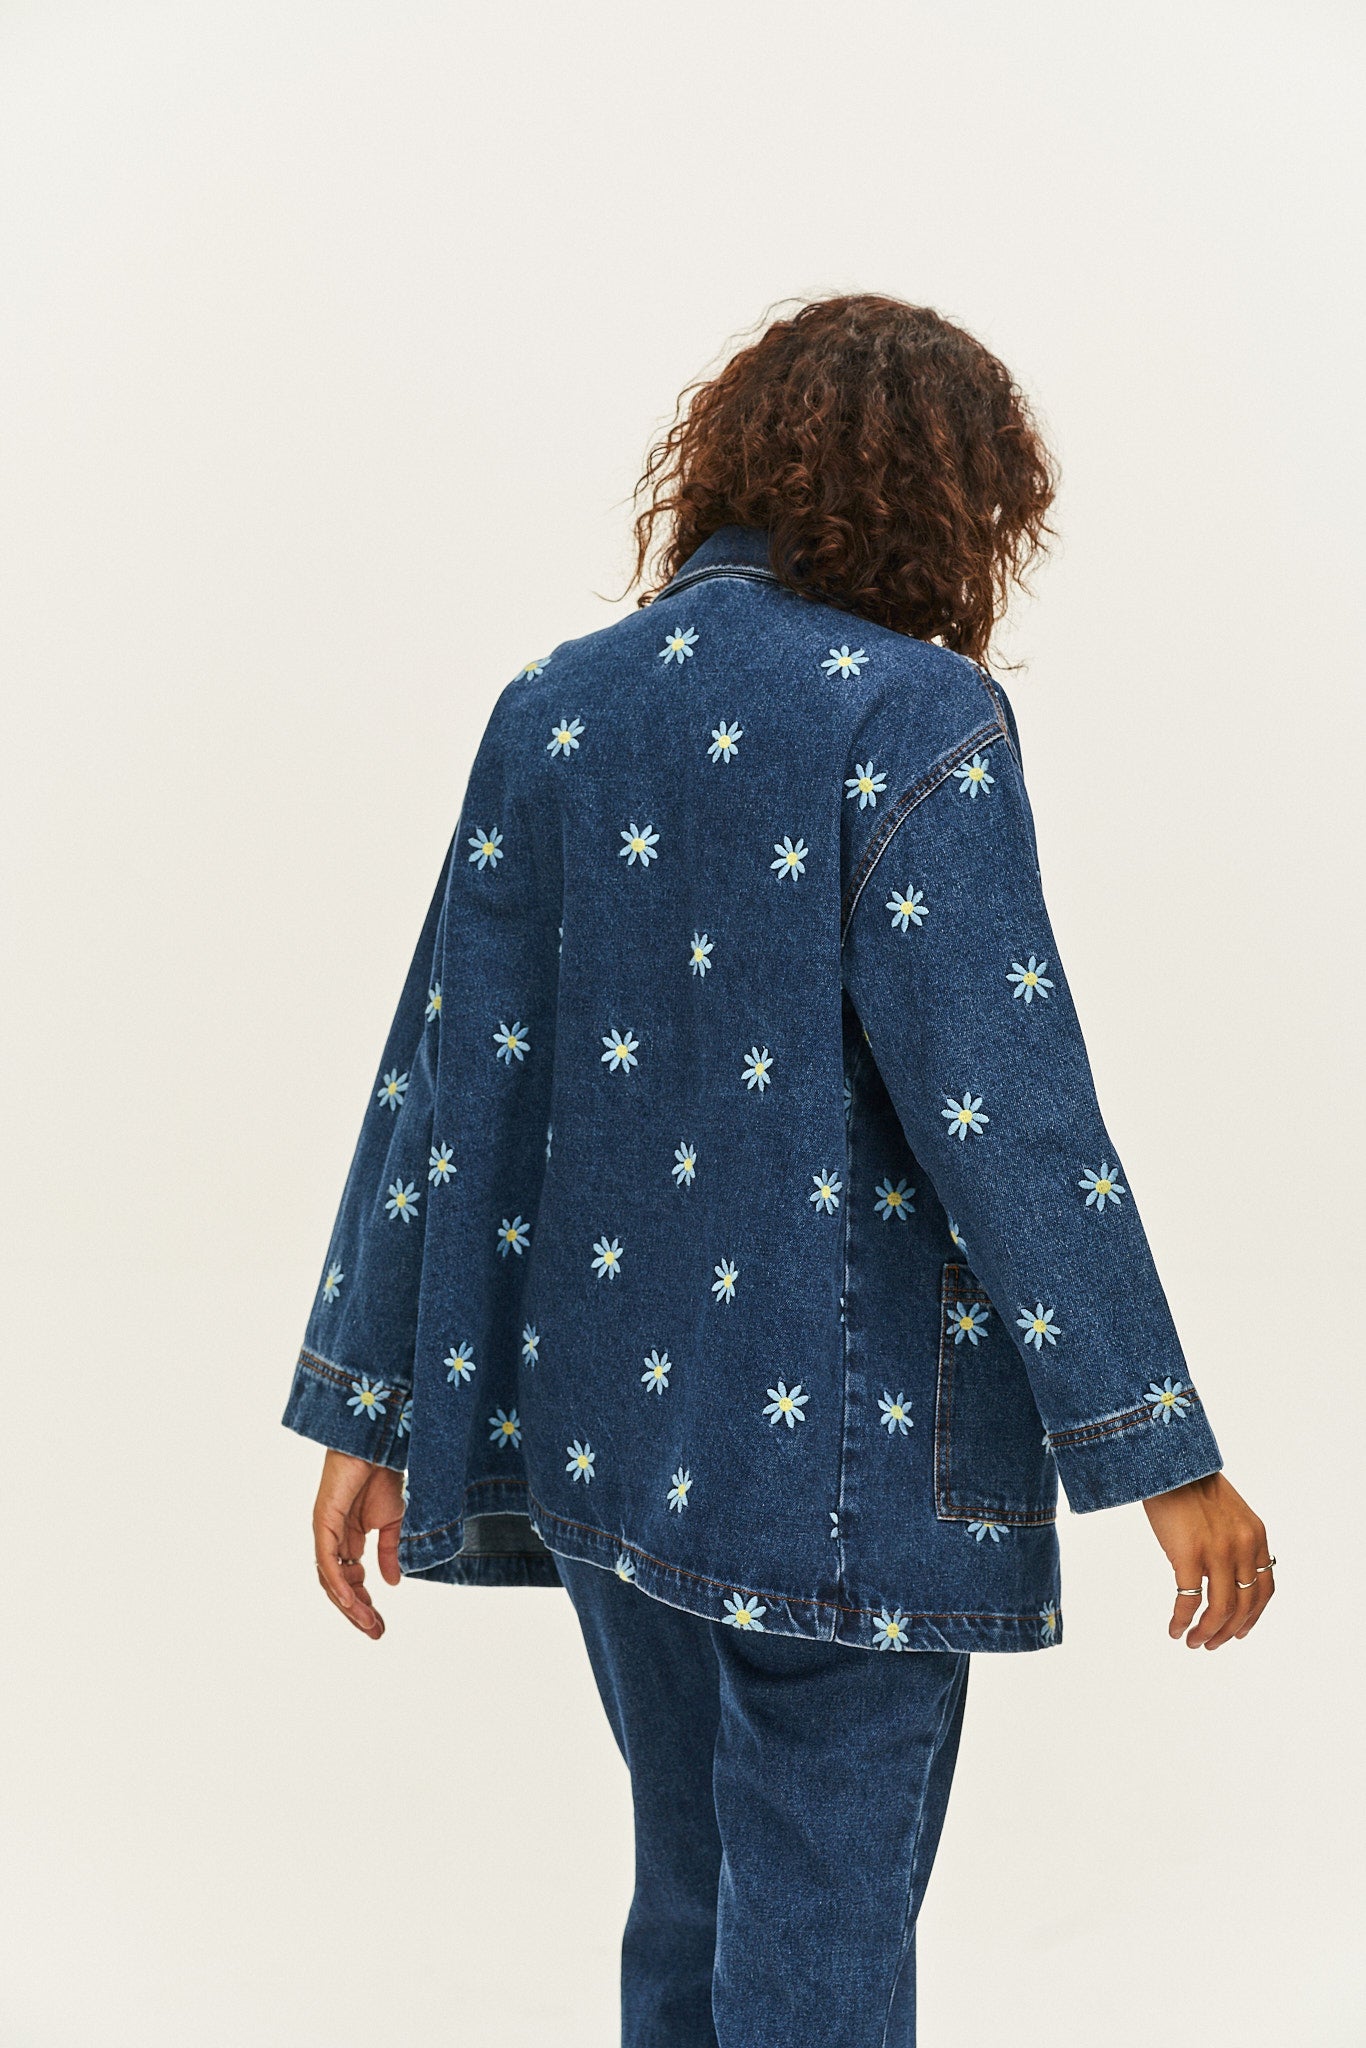 Olly Jacket: ORGANIC DENIM - Daisy-Mae Embroidery